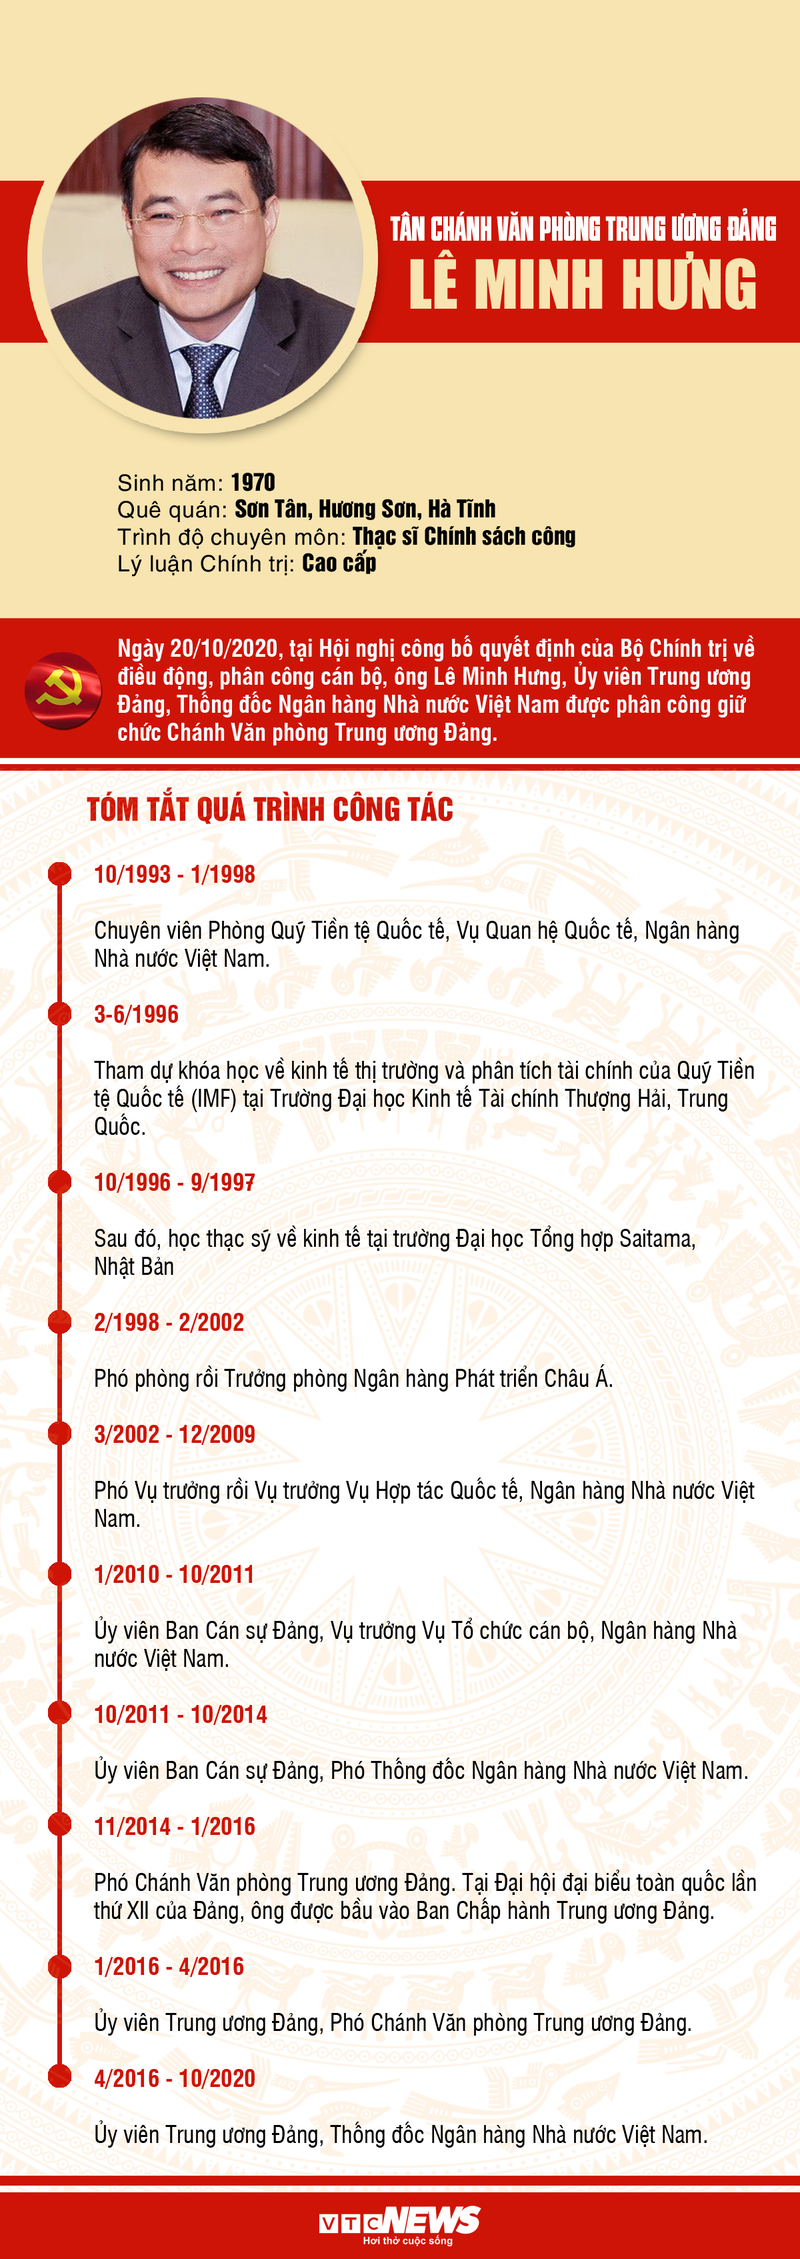 Infographic: Su nghiep tan Chanh Van phong Trung uong Dang Le Minh Hung